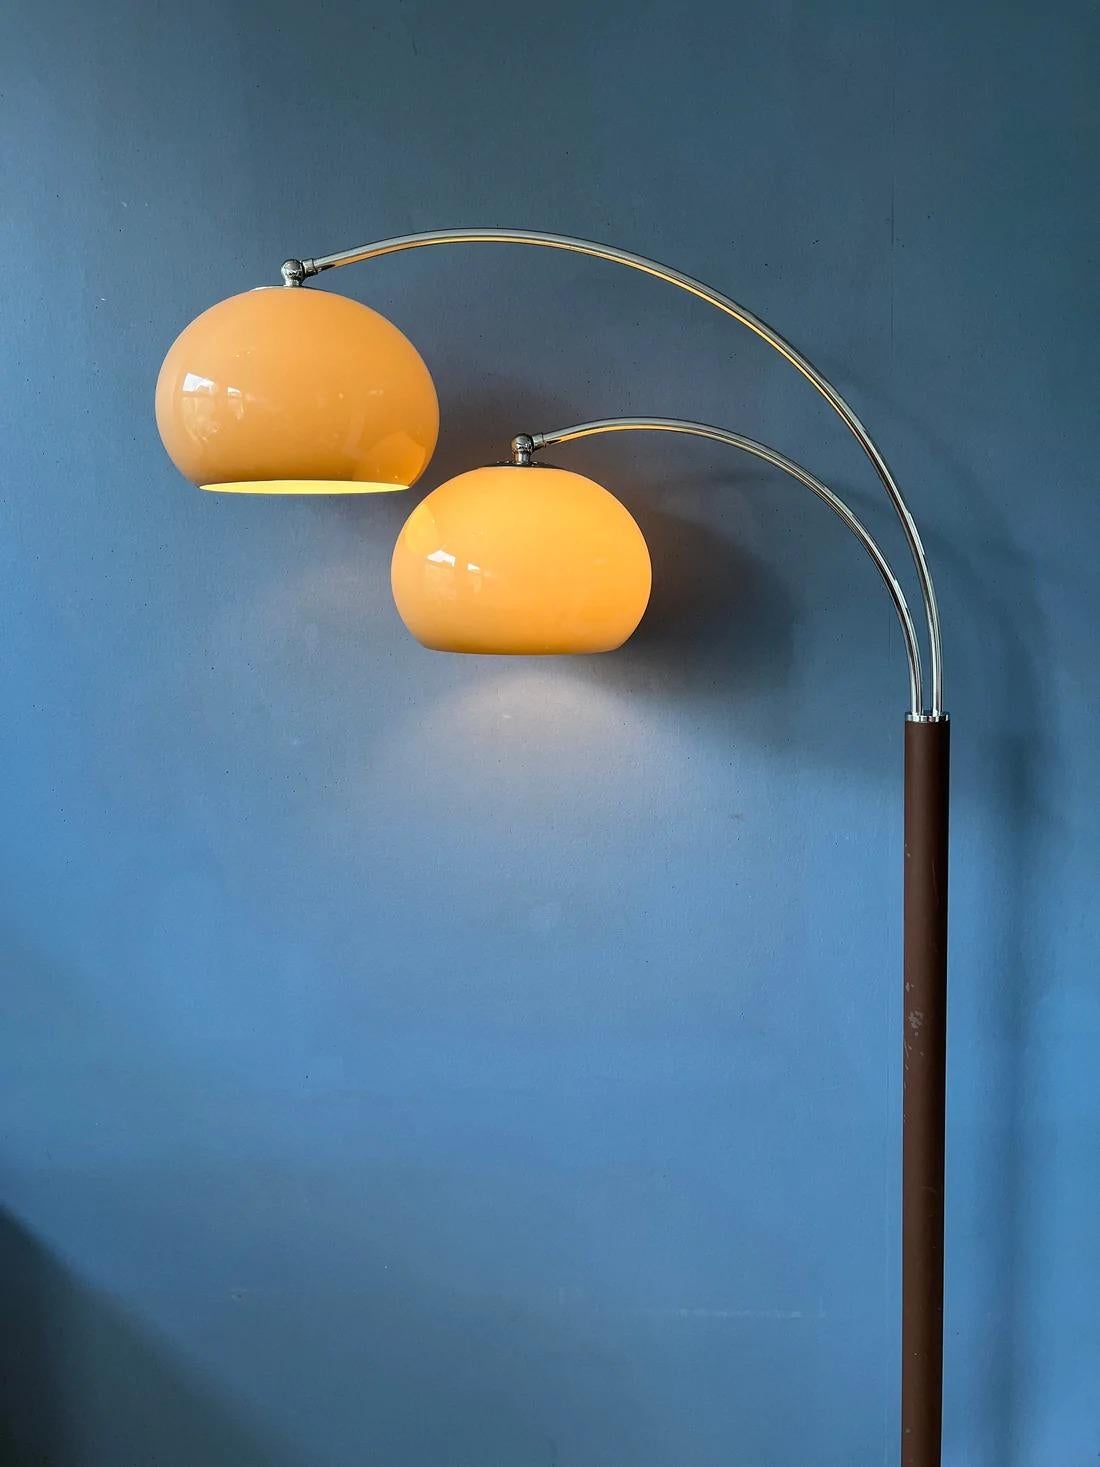 Lampadaire iconique Dijkstra à double arc avec des abat-jours champignons en verre acrylique de couleur beige et une base marron/chrome. Les abat-jours produisent une lumière chaude et peuvent être tournés vers le bas ou vers le haut. Les arcs sont